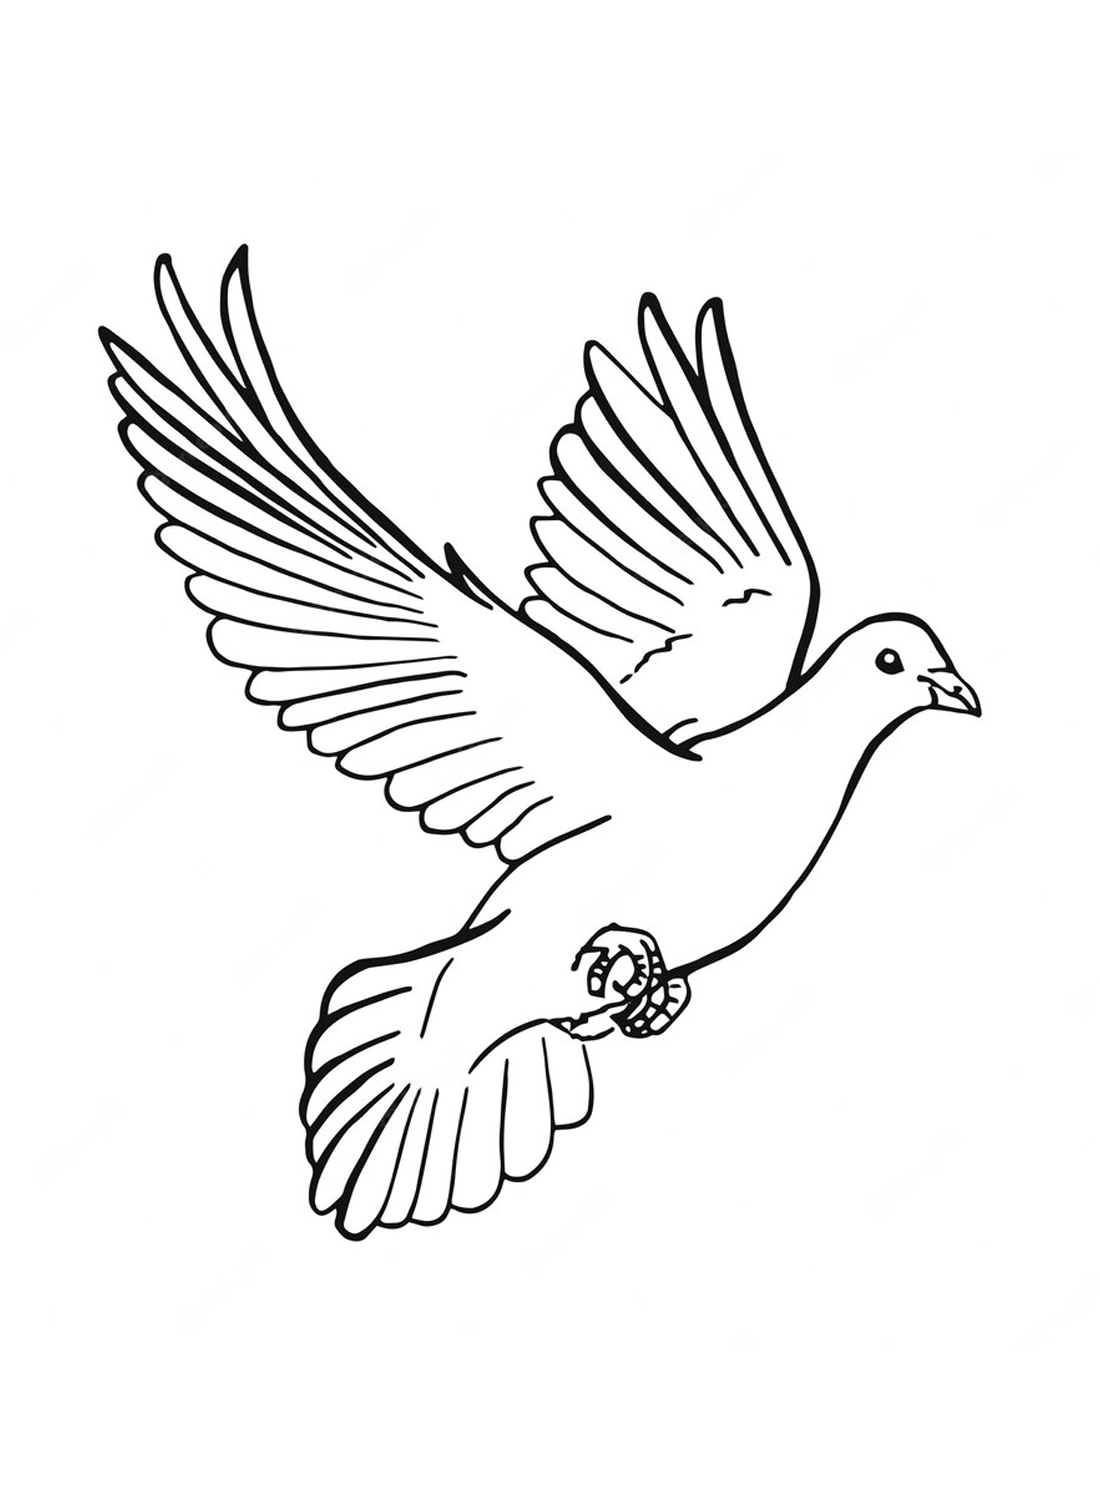 La colomba volante di Doves